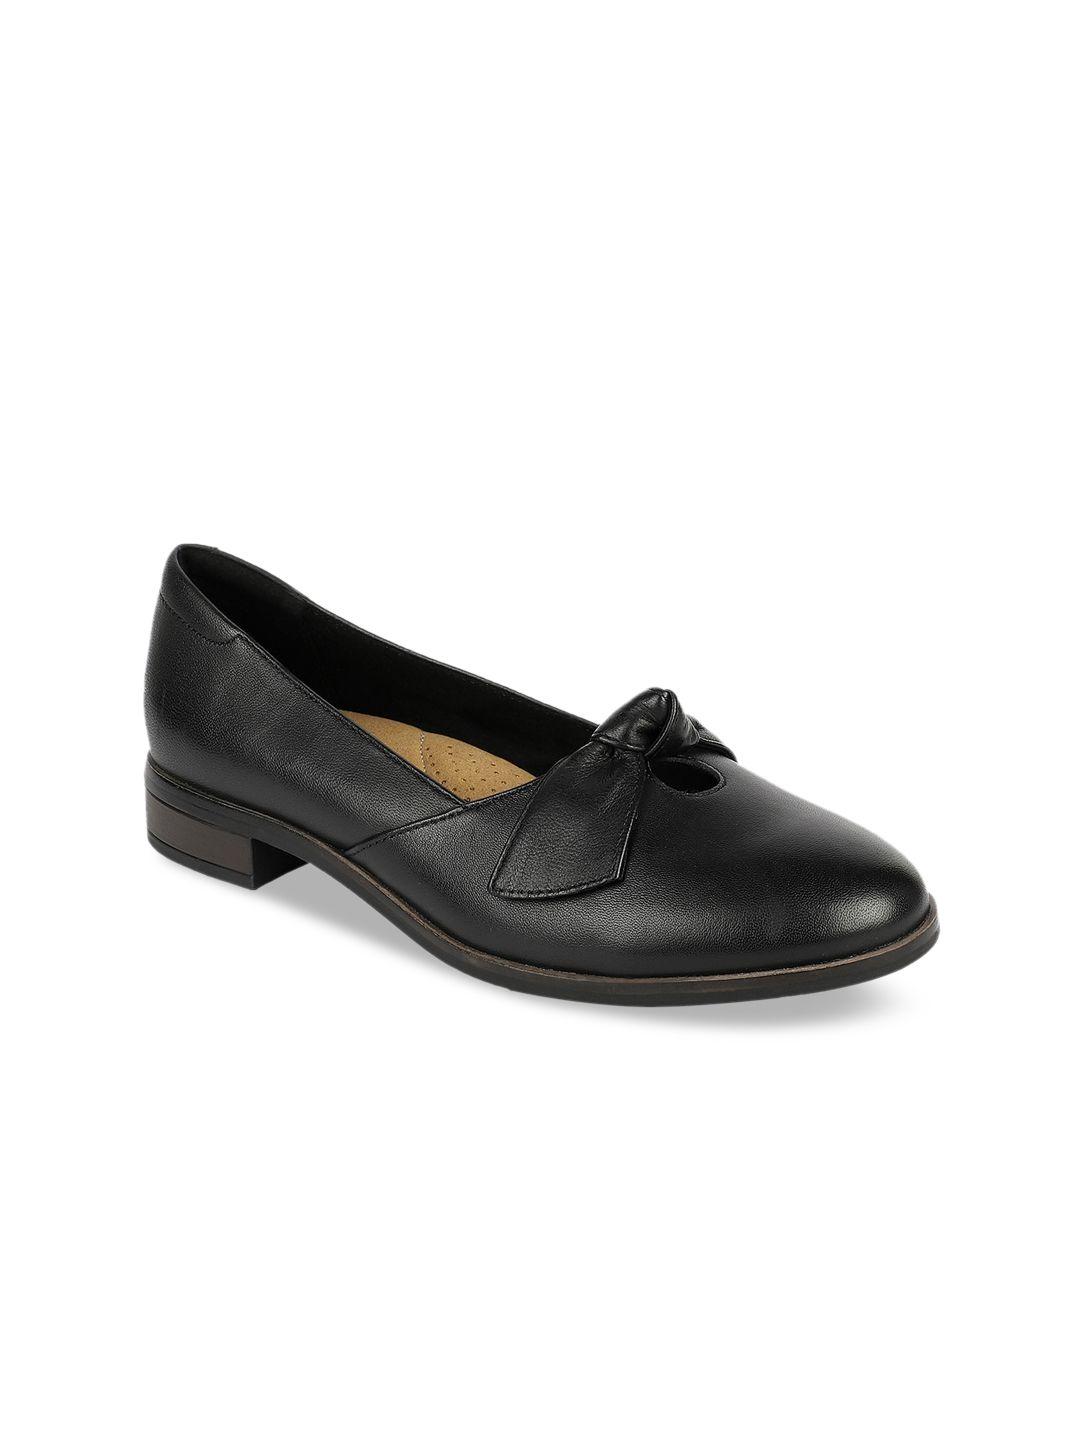 clarks women black solid comfort heeled pumps